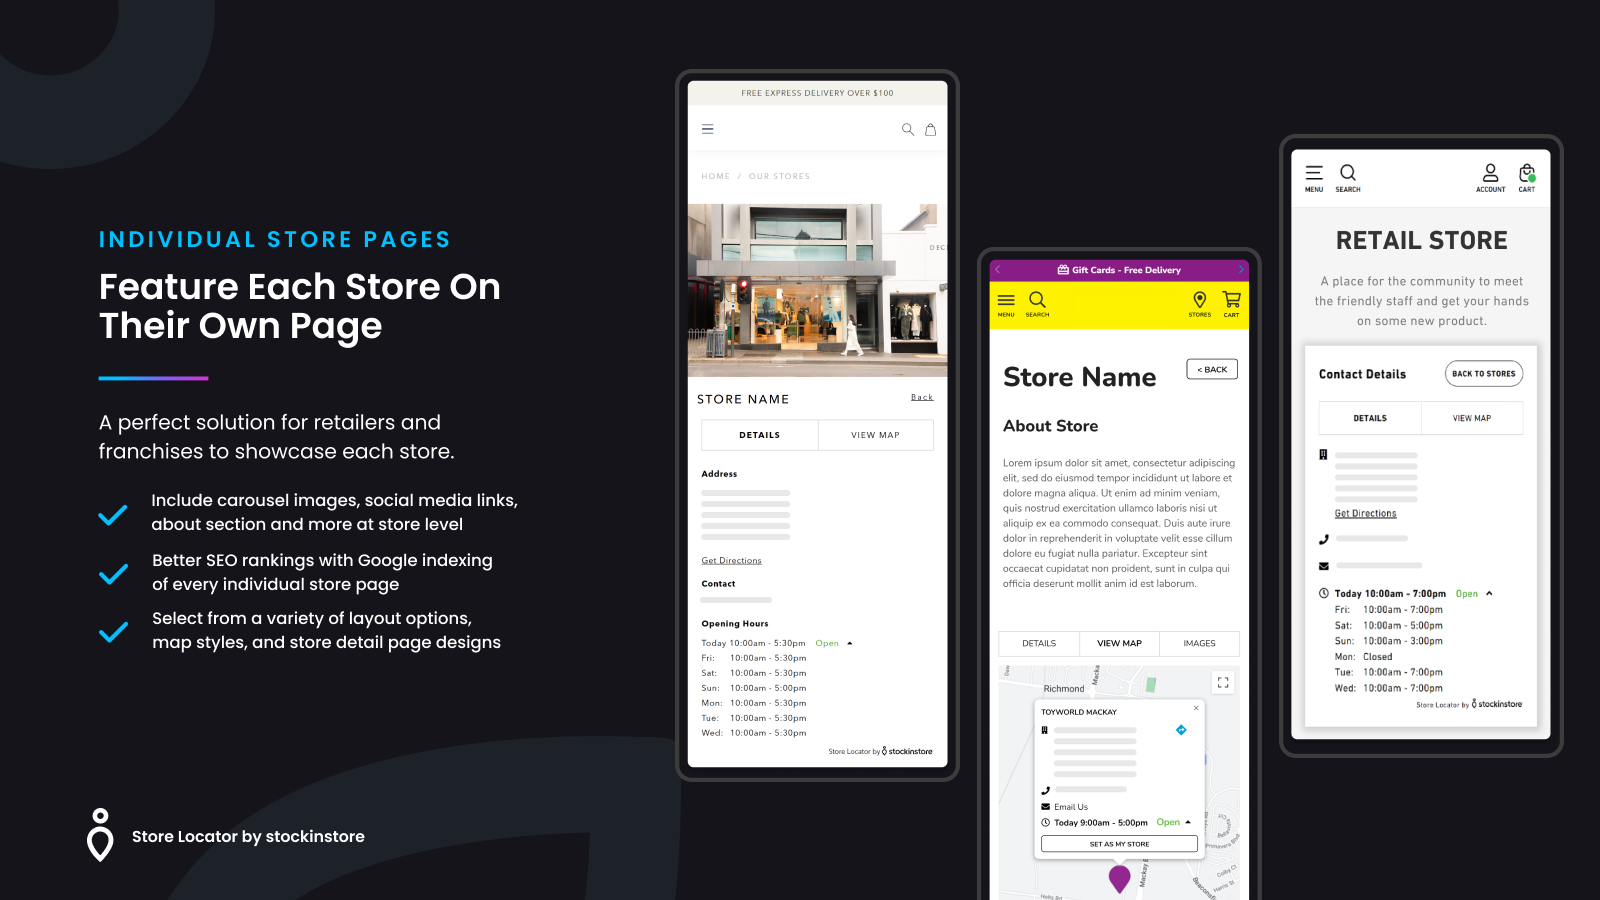 Aplicación de localizador de tiendas stockinstore con páginas de tiendas individuales